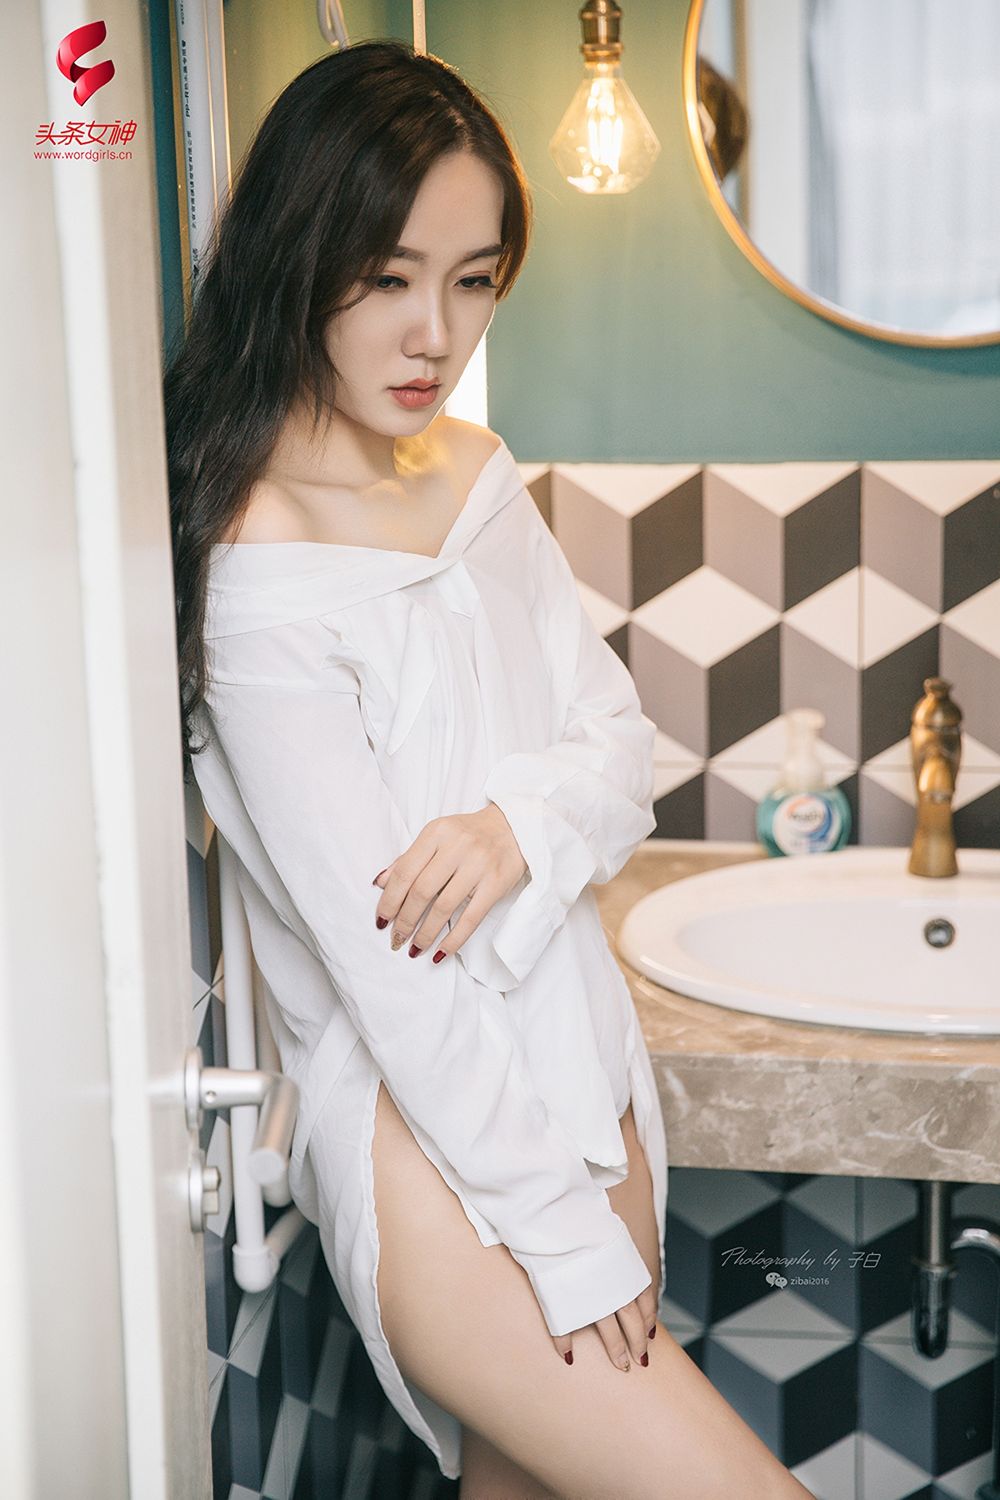 美女模特艾静香性感白衬衫修长美腿小家主题写真